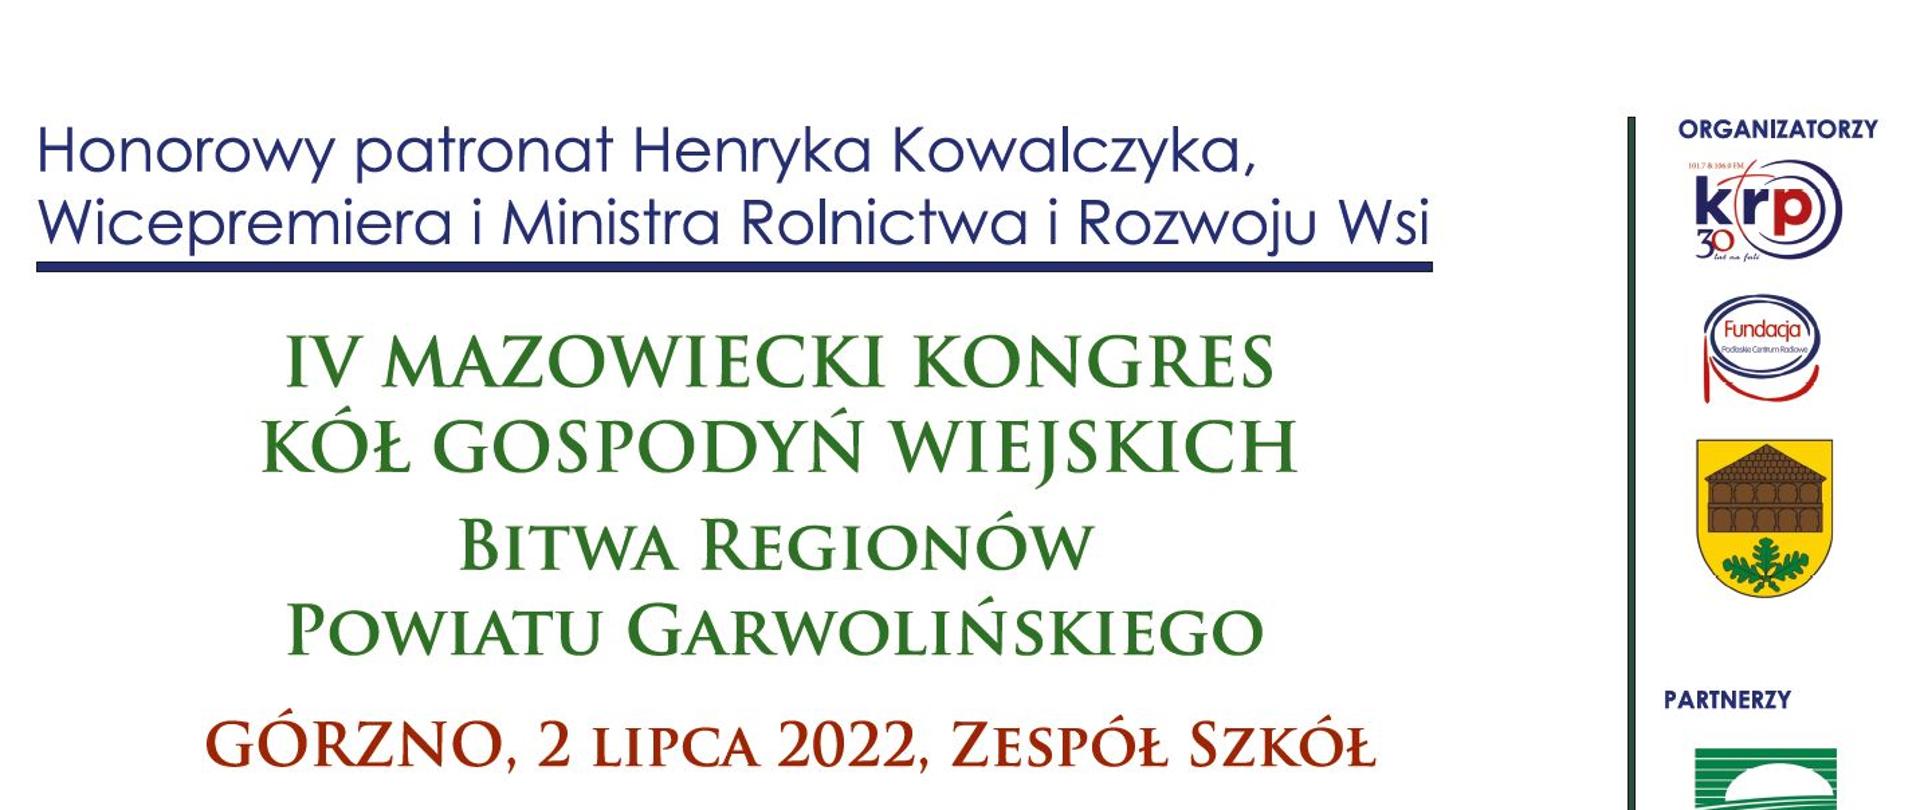  IV Kongres KGW połączony z Bitwą Regionów KGW Powiatu Garwolińskiego! 